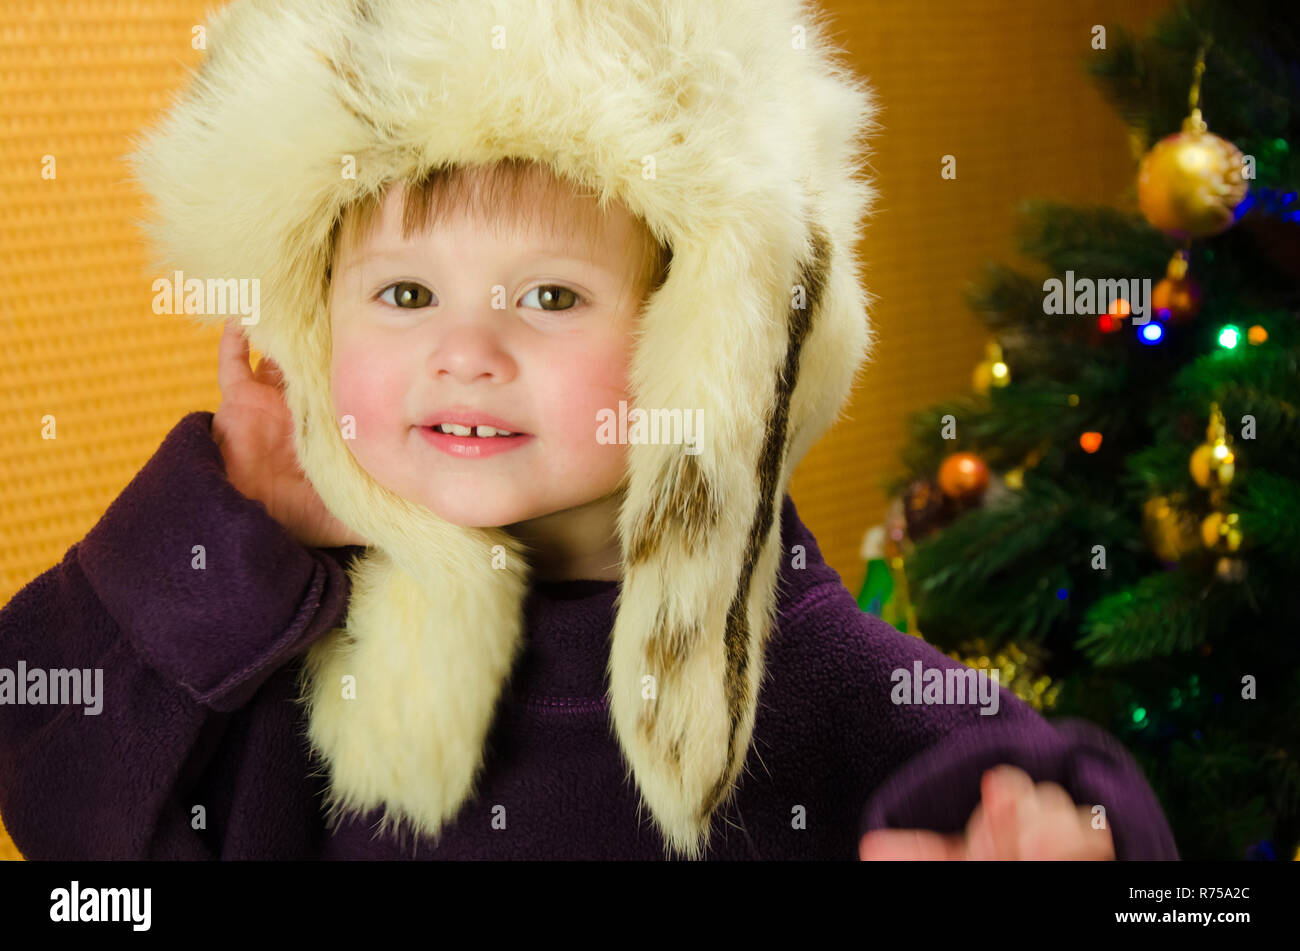 Retrato de dos años Pretty Little Girl en blanco, ruso, sombrero de piel cerca de un árbol de Navidad Foto de stock